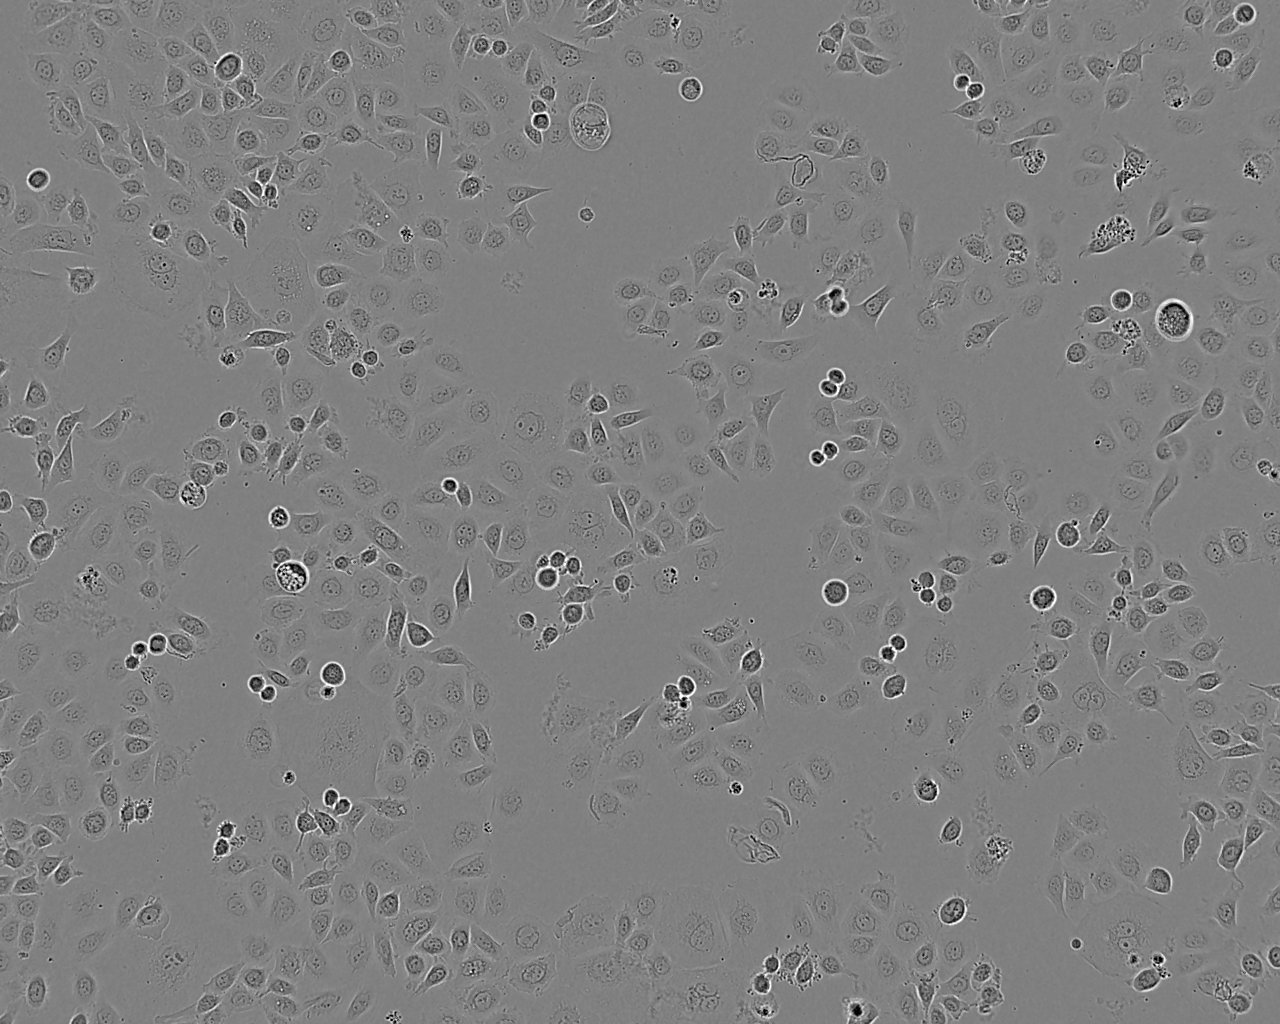 108CC15 Cell:小鼠神经母瘤与大鼠胶质瘤之融合细胞系,108CC15 Cell